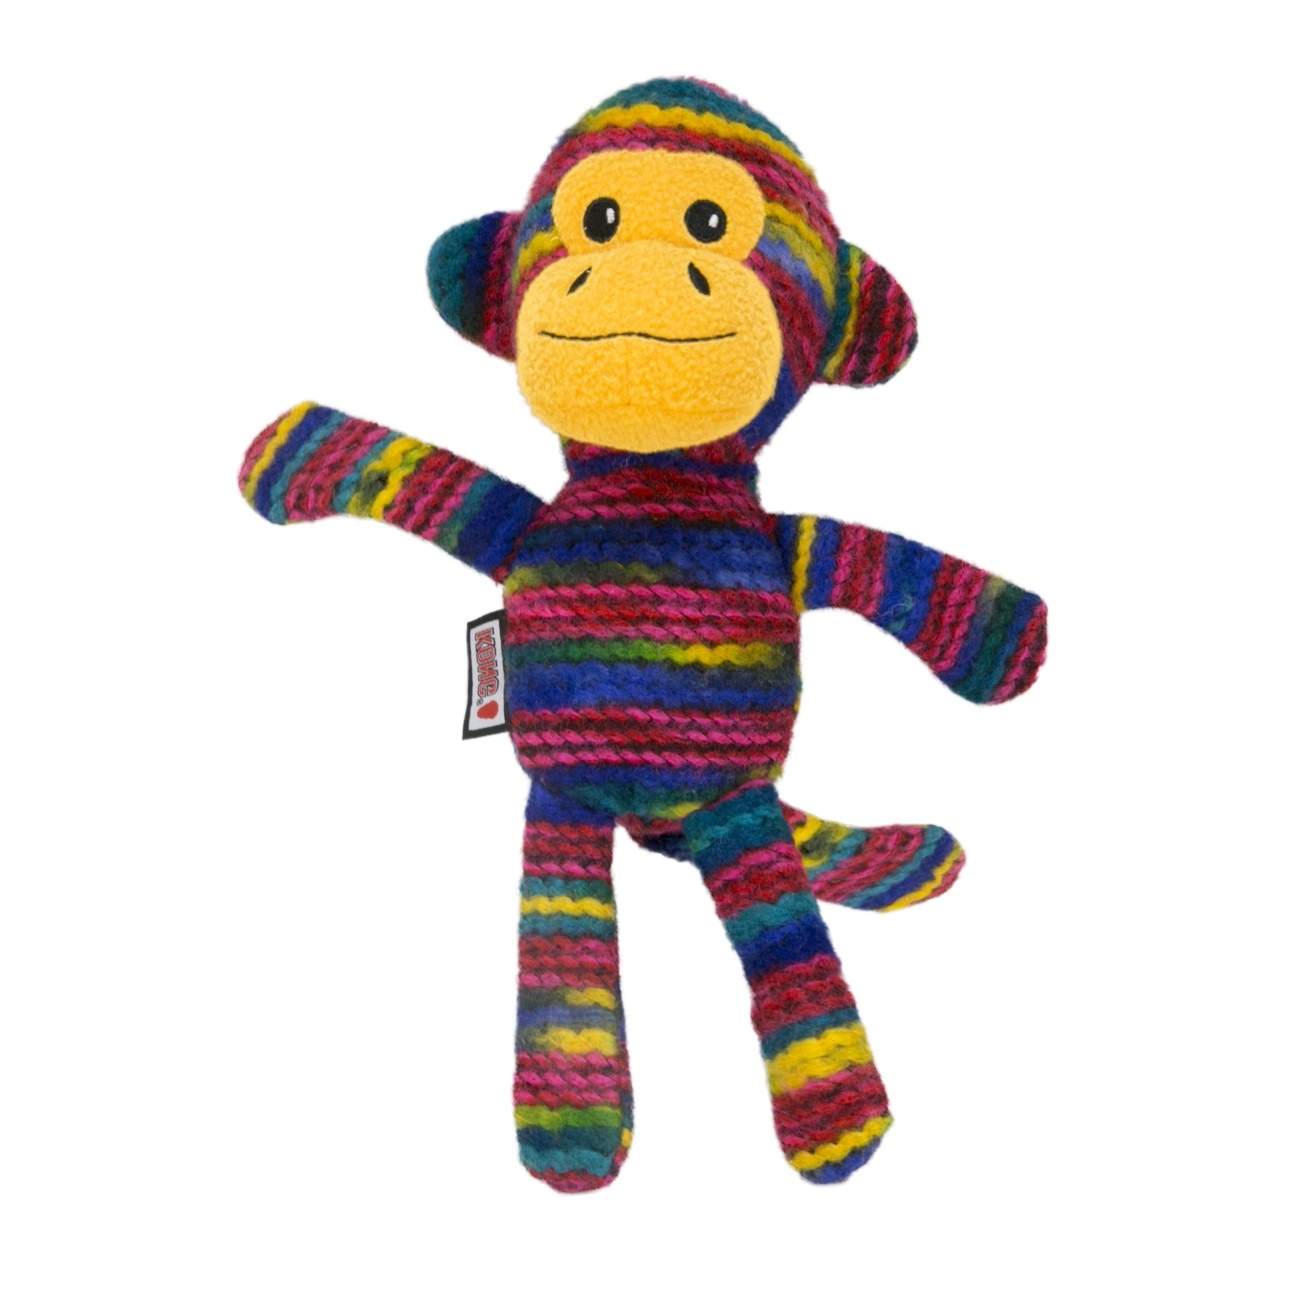 KONG Yarnimals Plush Squeaker Dog Toys - Monkey image 0